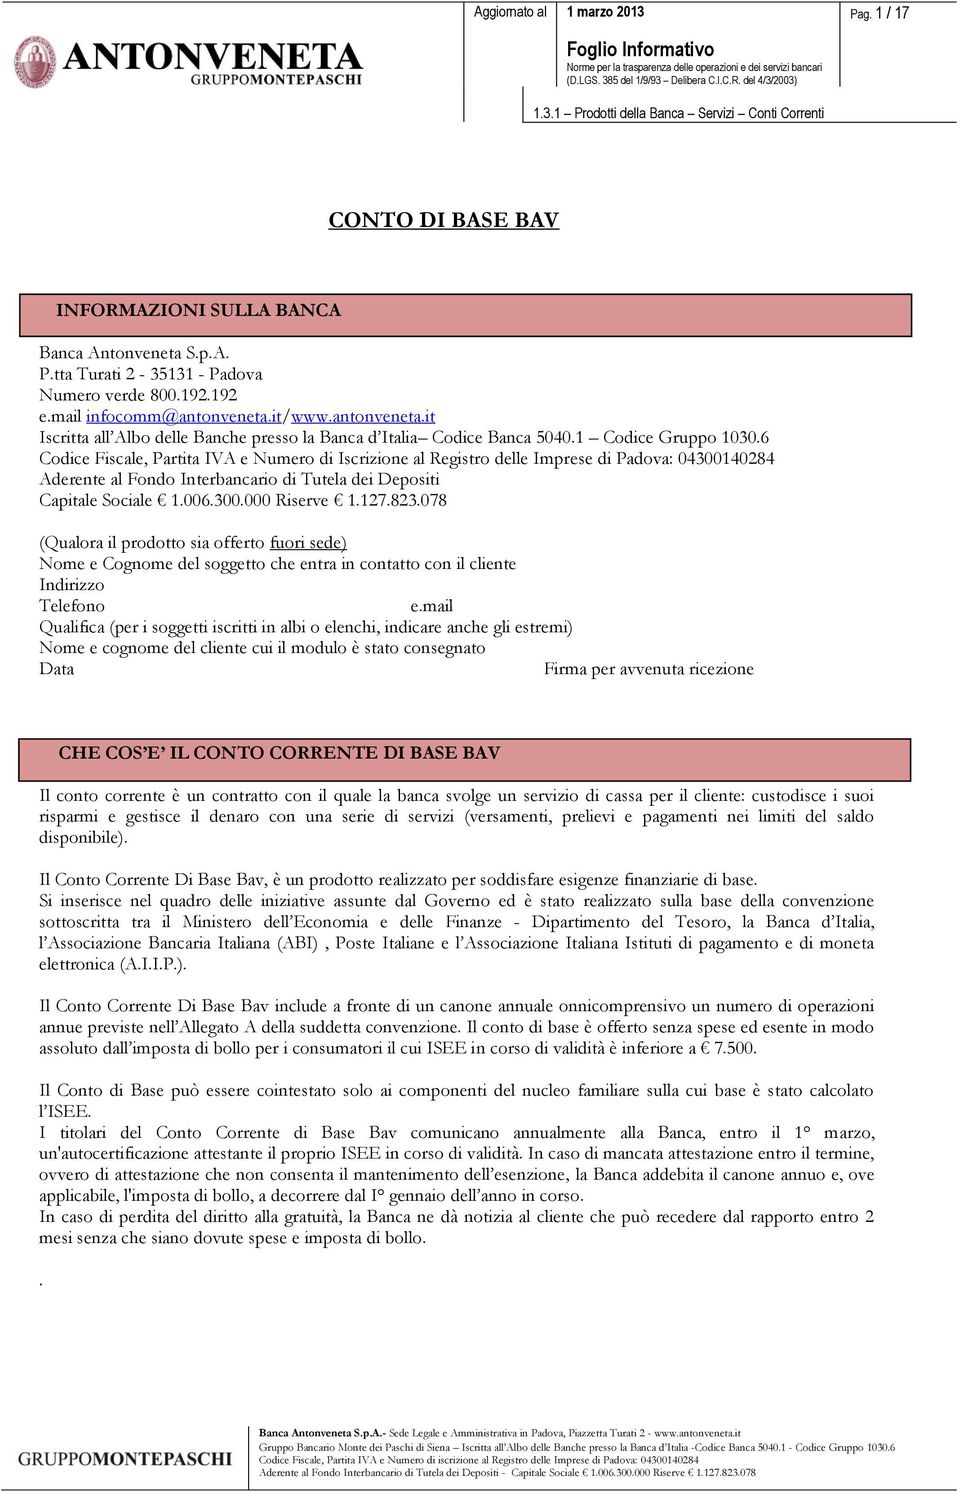 6 Codice Fiscale, Partita IVA e Numero di Iscrizione al Registro delle Imprese di Padova: 4314284 Aderente al Fondo Interbancario di Tutela dei Depositi Capitale Sociale 1.6.3. Riserve 1.127.823.